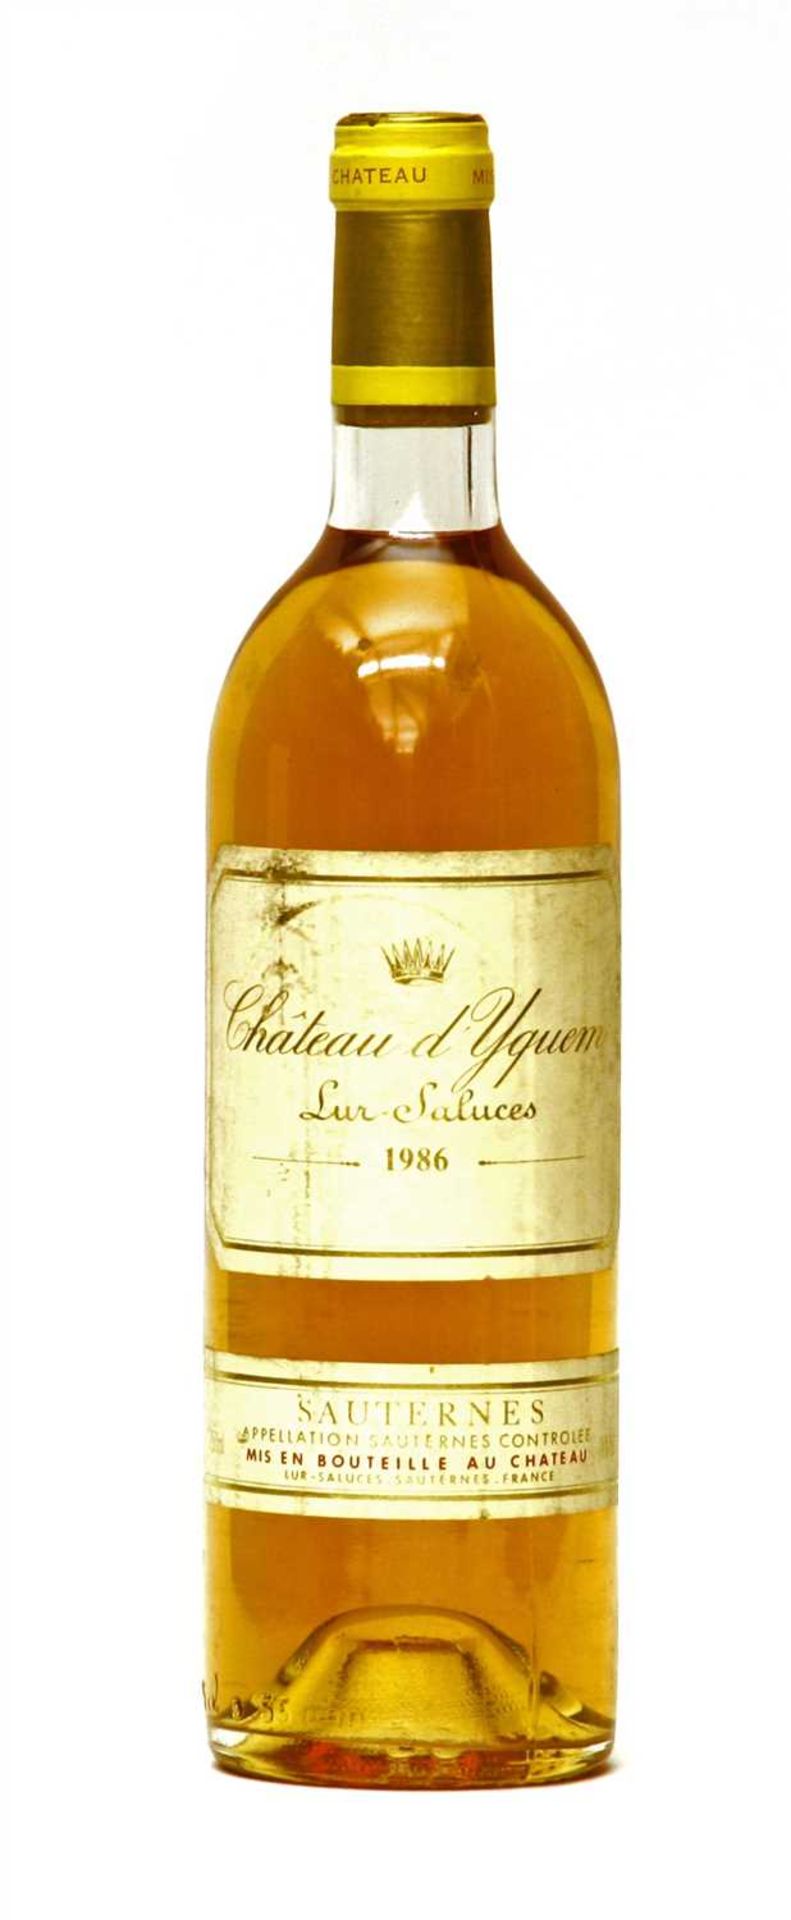 Château d'Yquem, Lur-Saluces, 1986, one bottle